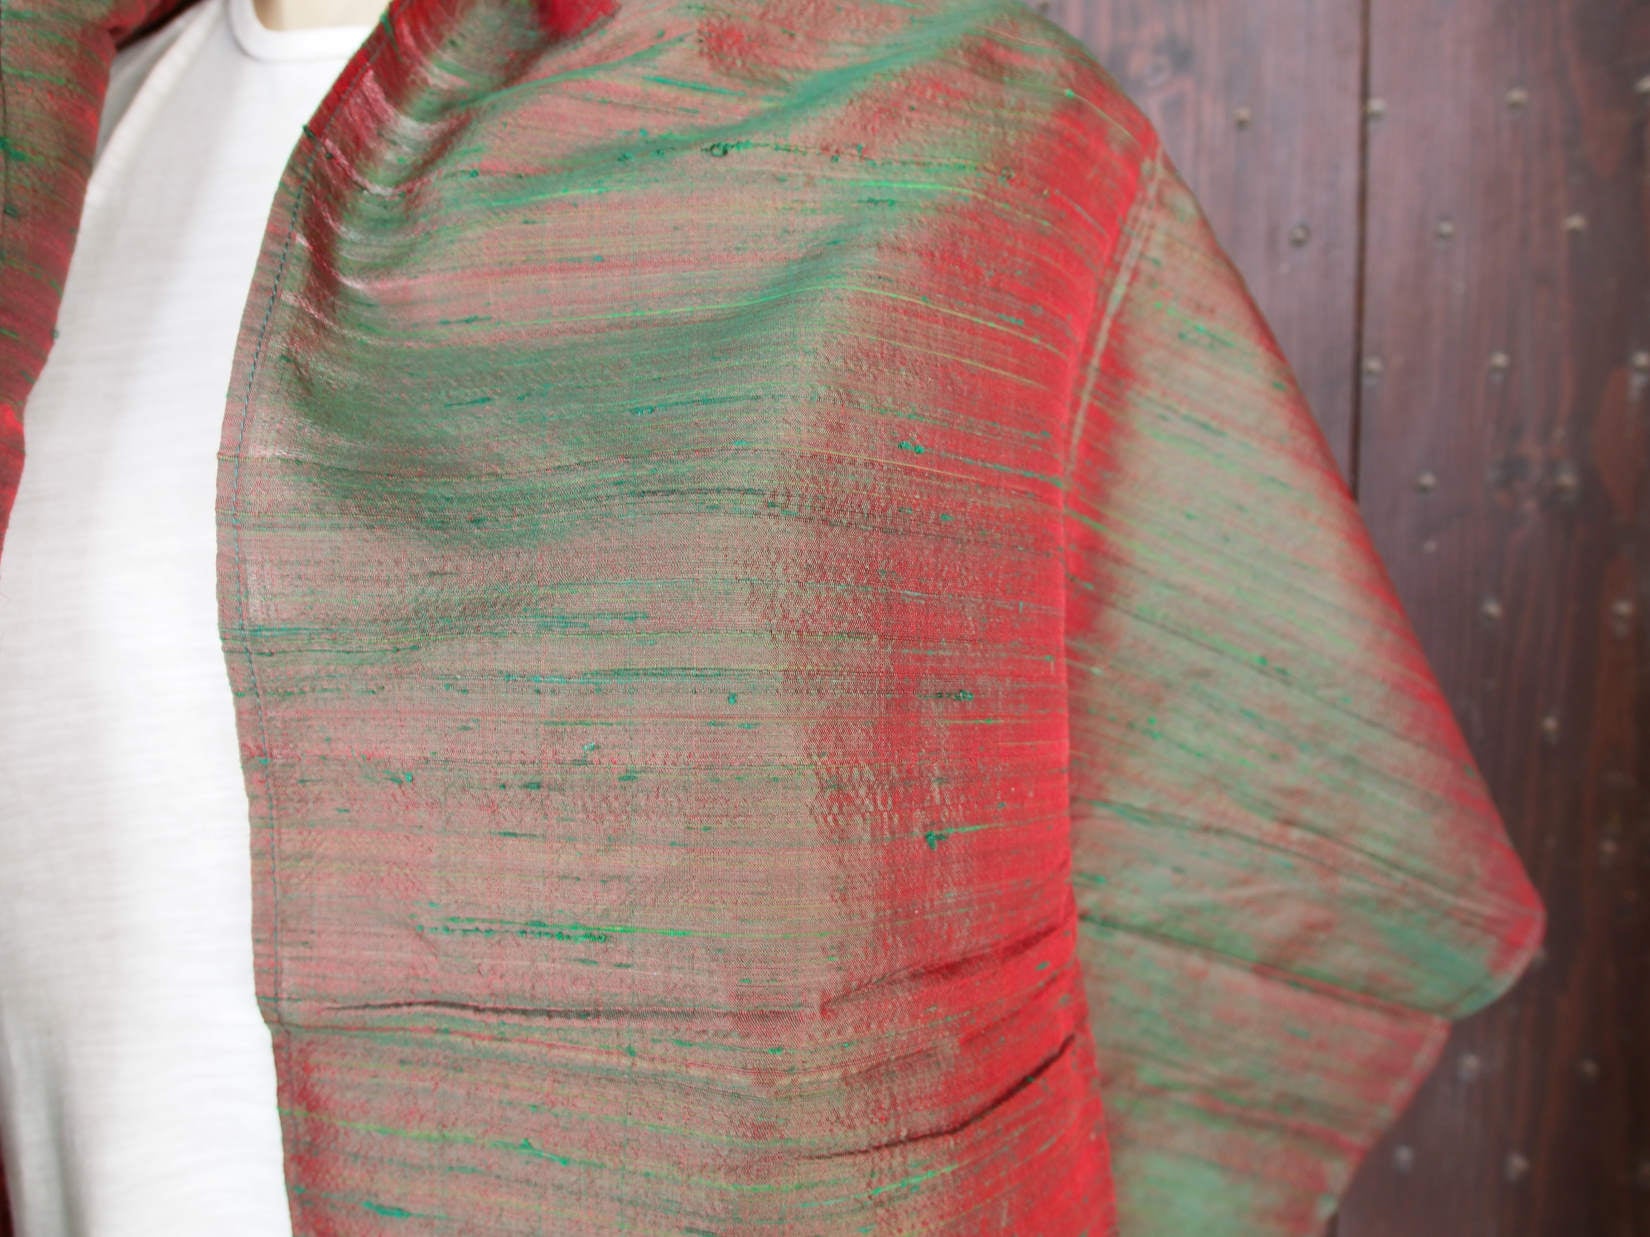 Scialle indiano in shantung di seta , un tessuto di seta selvaggia, di colore unito, caratterizzato da una superficie ruvida, molto irregolare e dall'aspetto grezzo. colore marrone  e rosso.